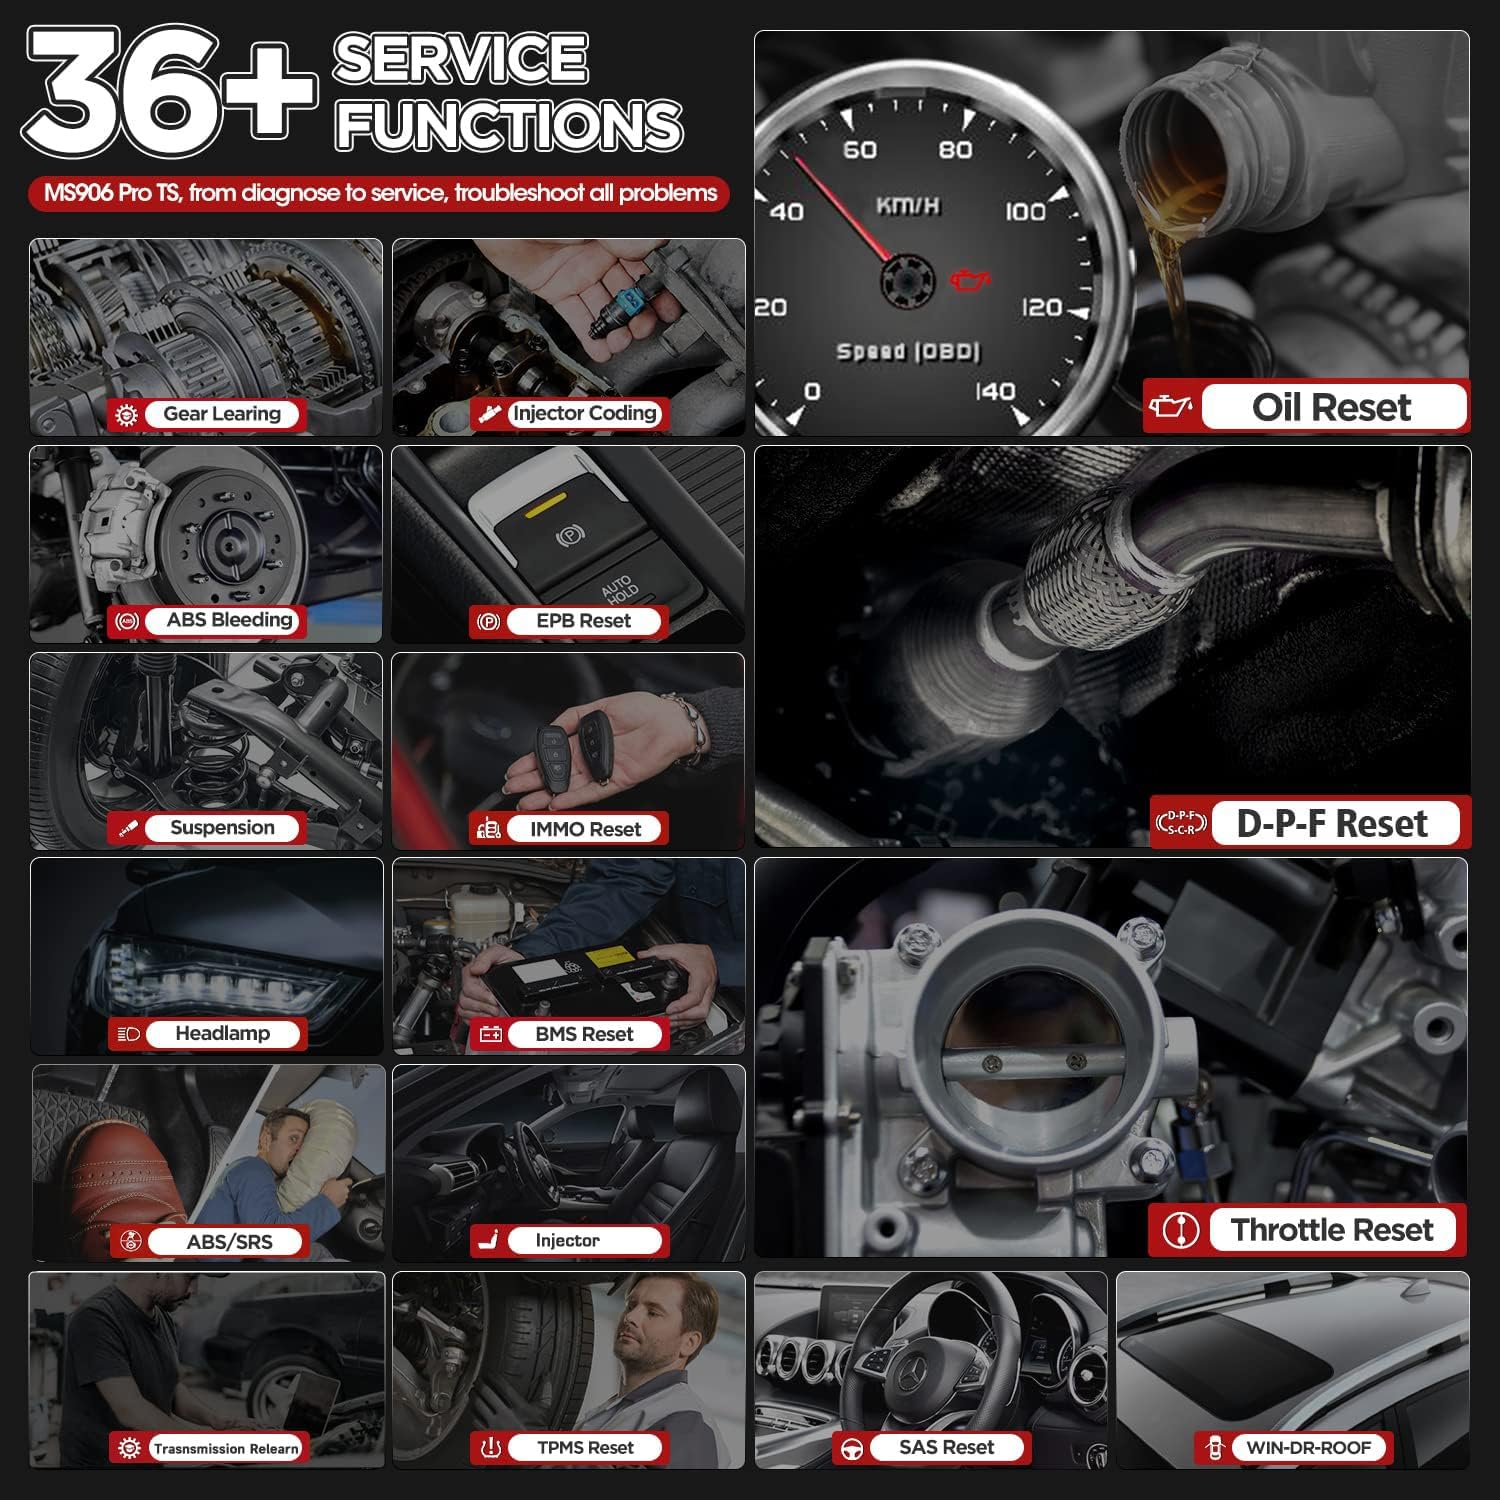 ms906 pro ts 36+ services